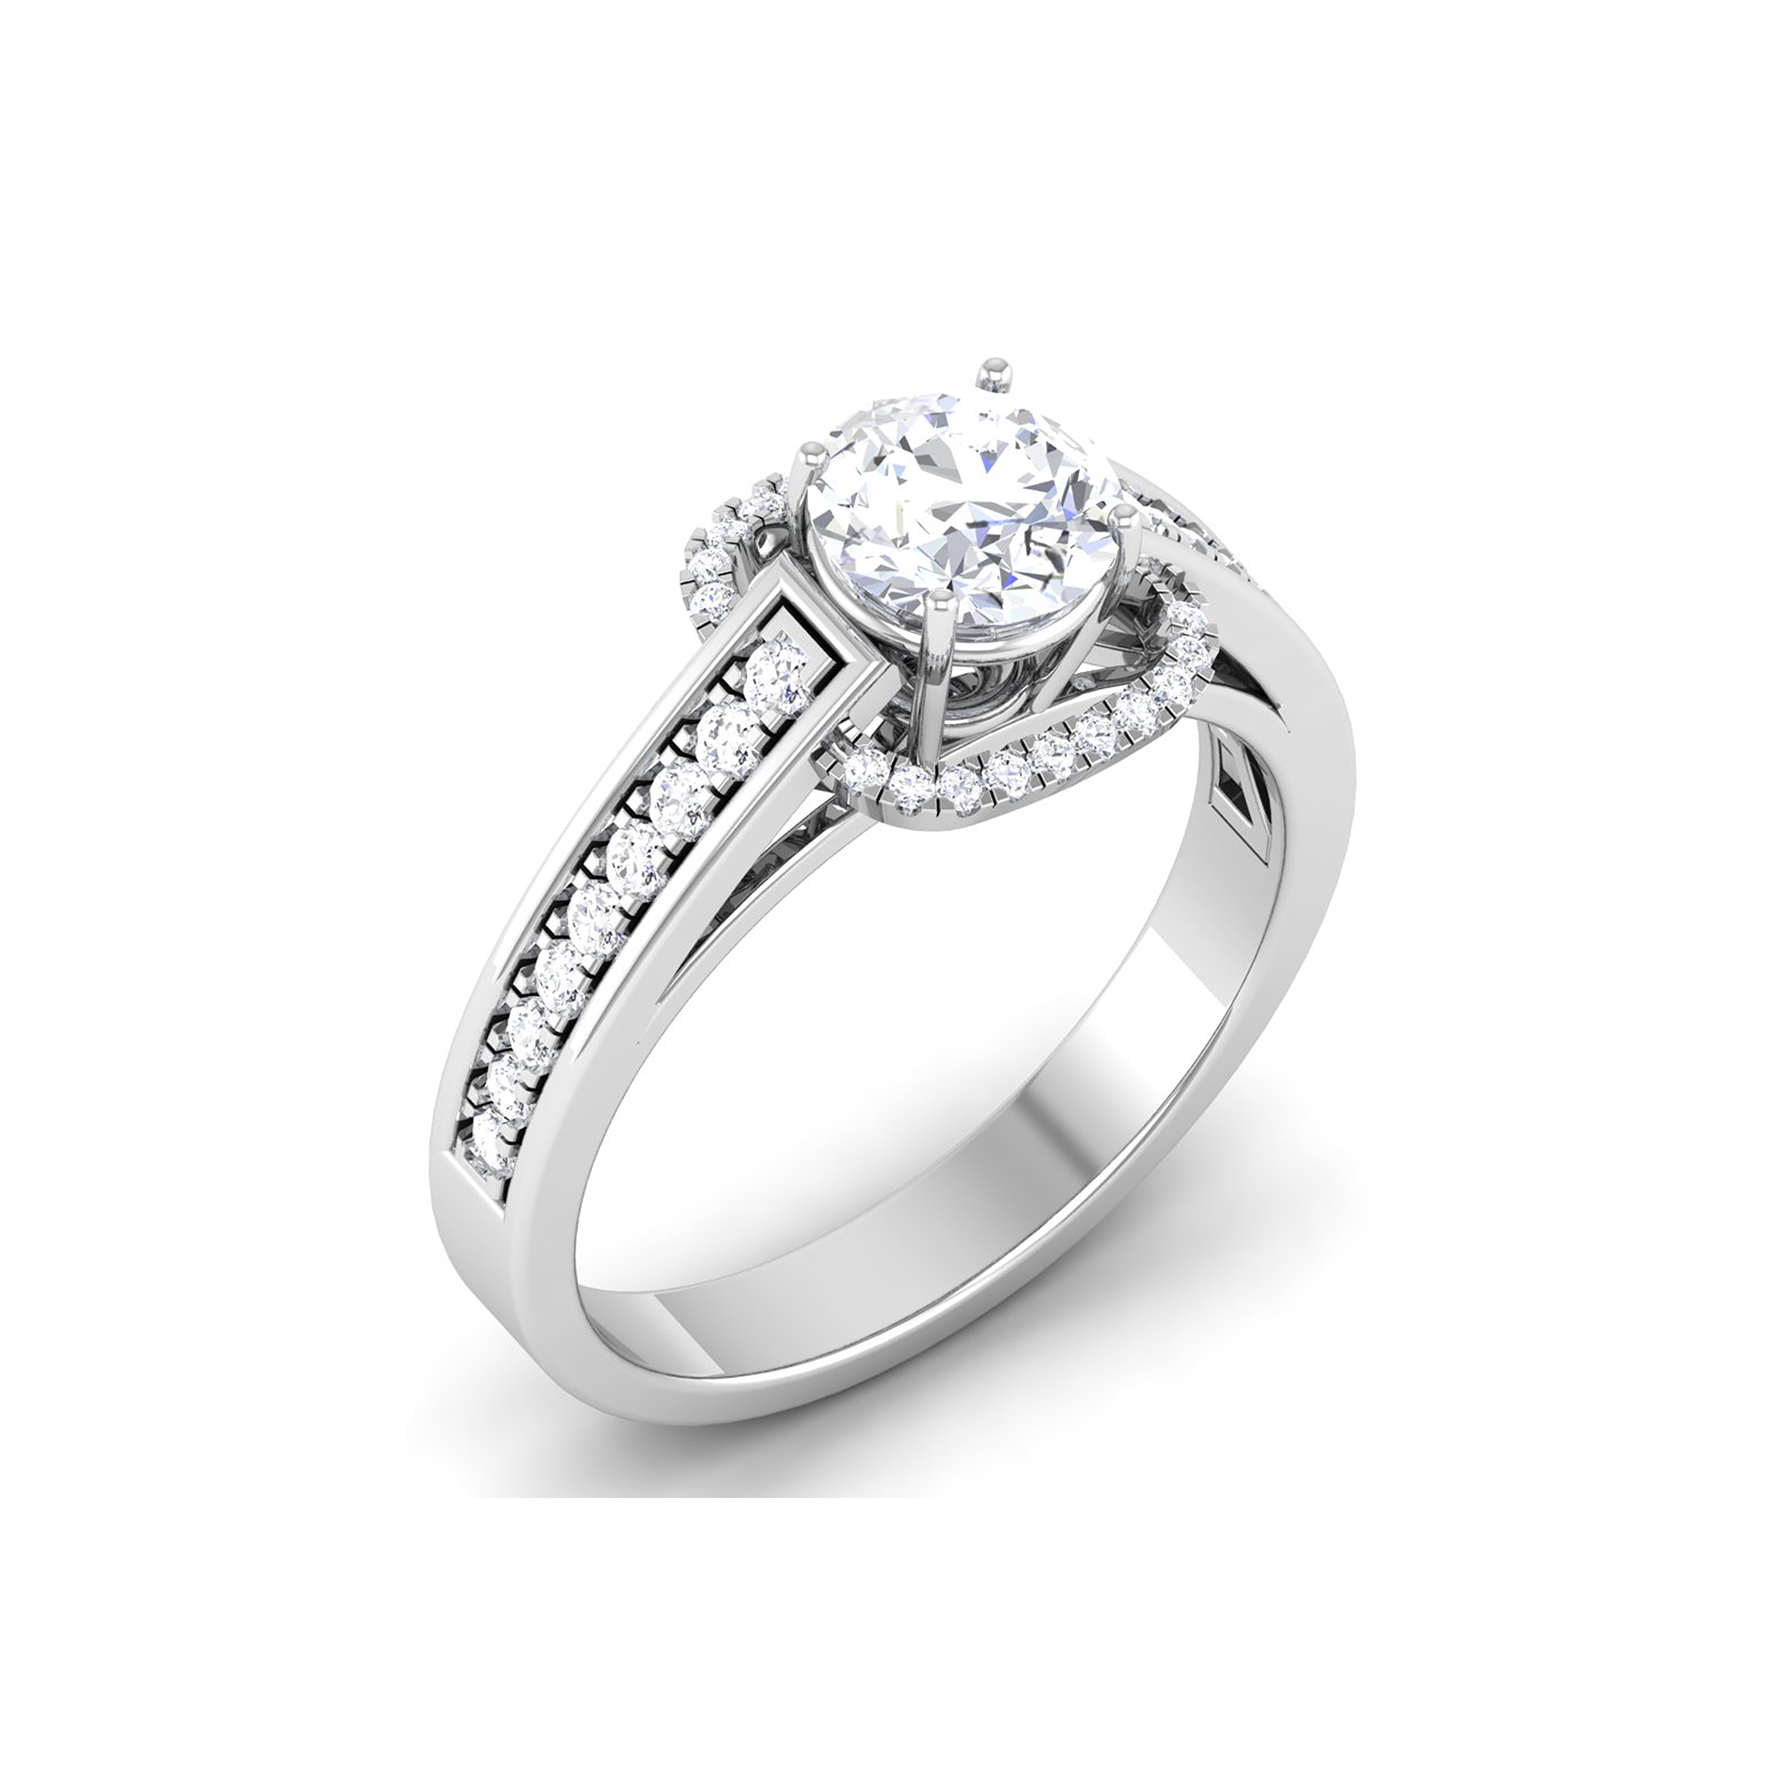 Buy Diamond Rings Online at Best Price in UAE | Carat Craft